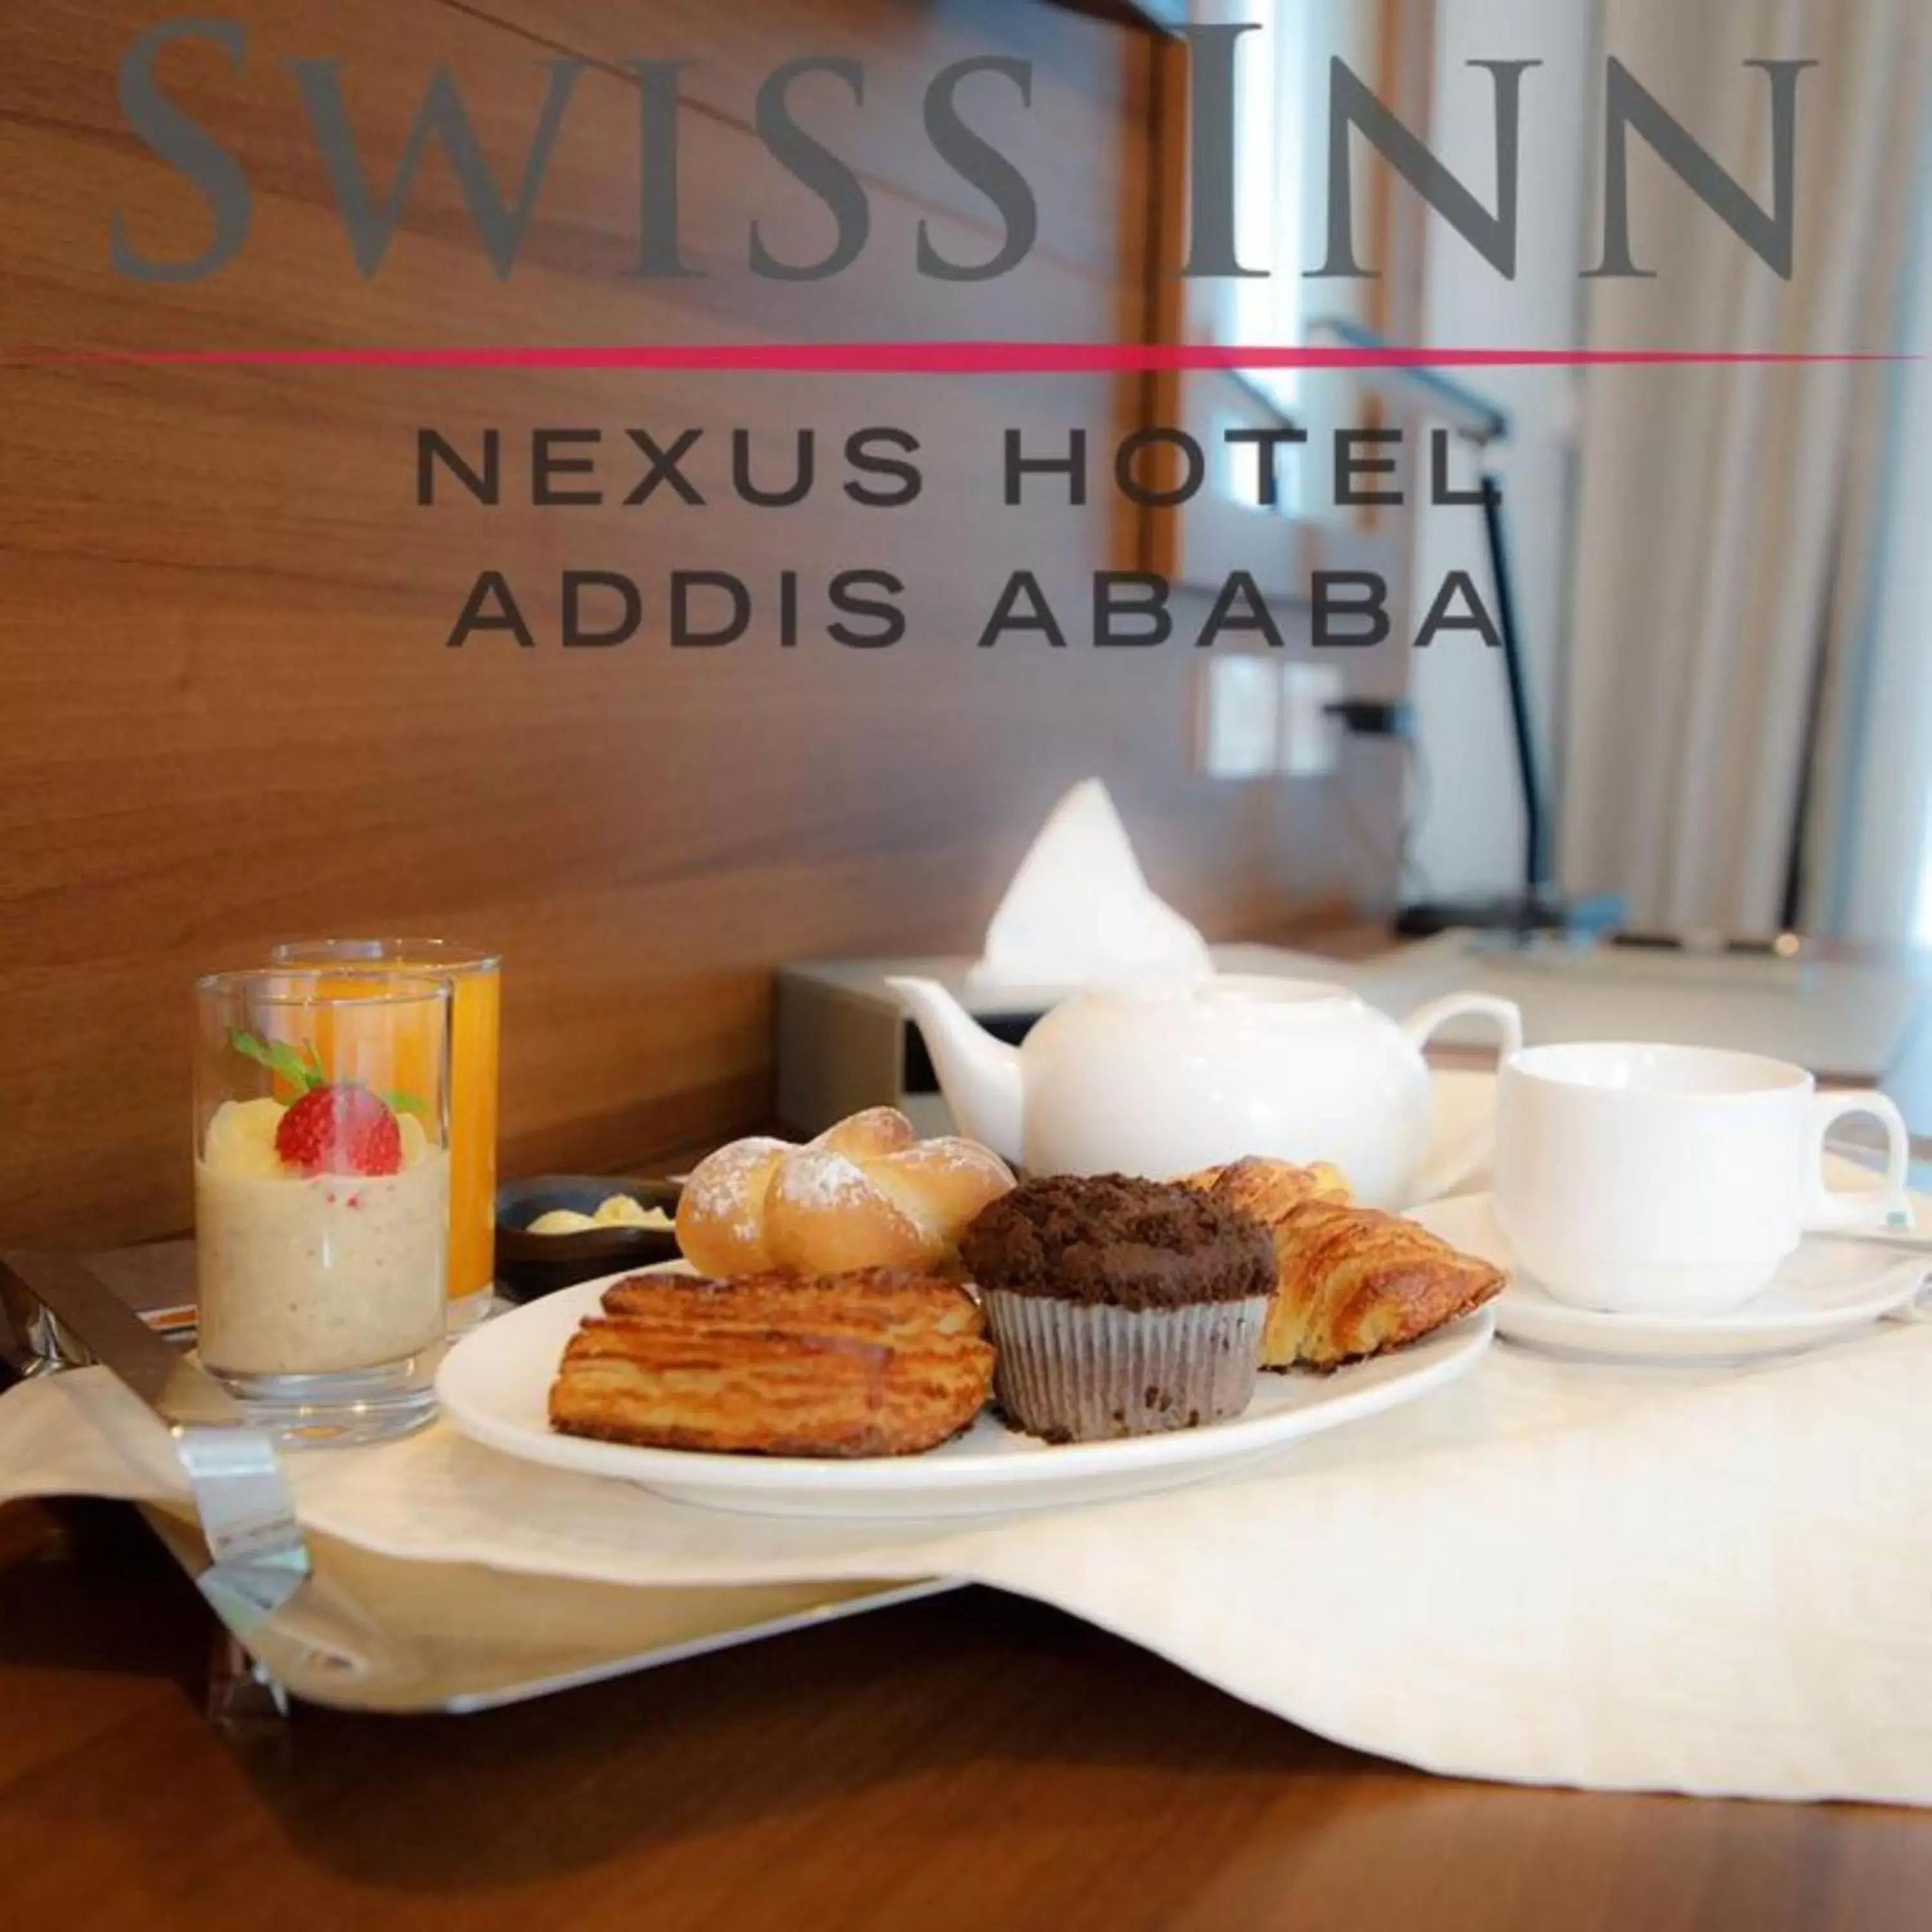 Breakfast in Swiss Inn Nexus Hotel